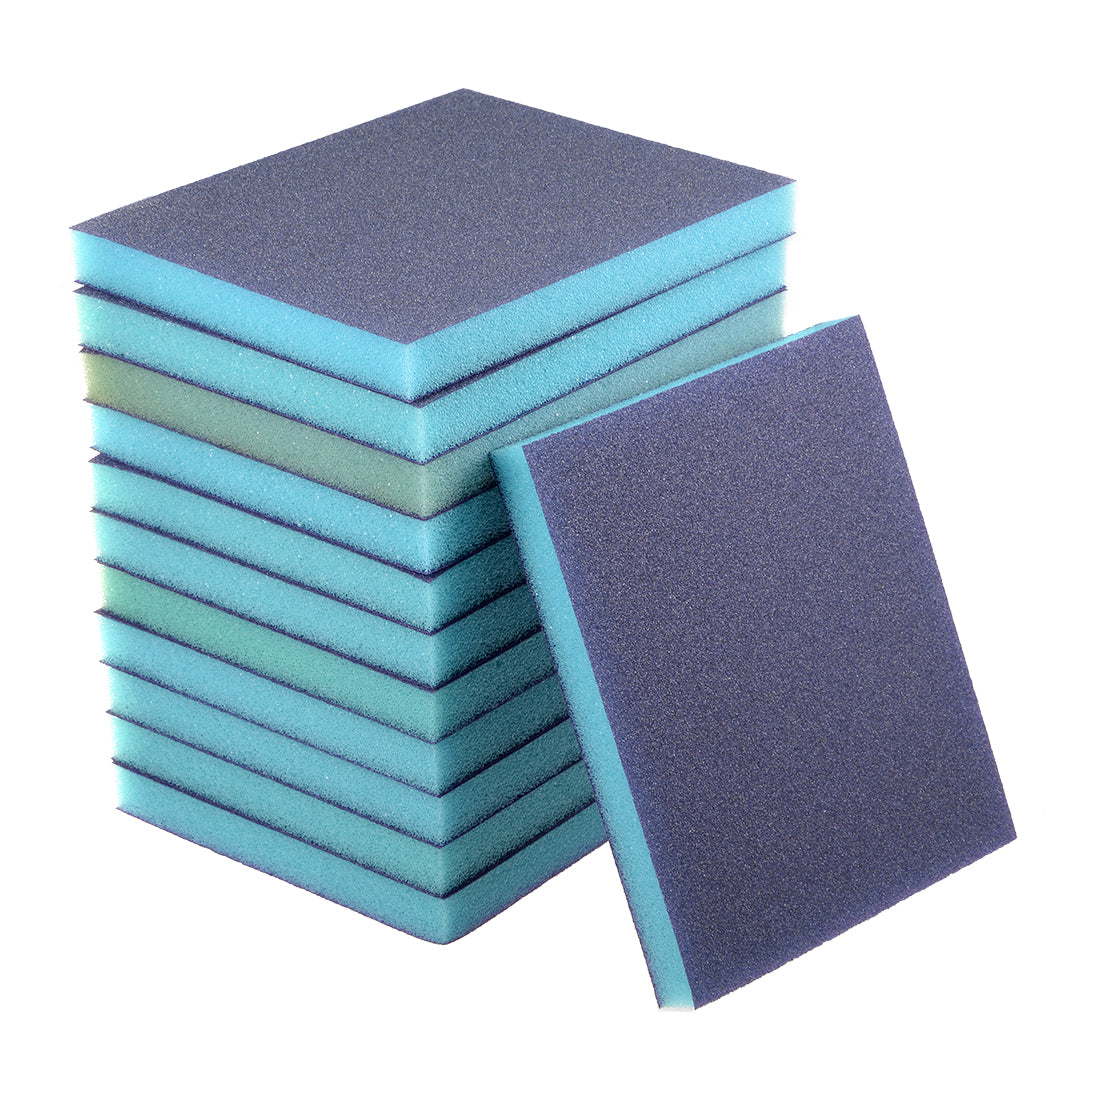 uxcell Uxcell Sanding Sponge, Coarse Grit 100 Grit Sanding Block Pad, 4.72" x 3.86" x 0.47" Size 12pcs